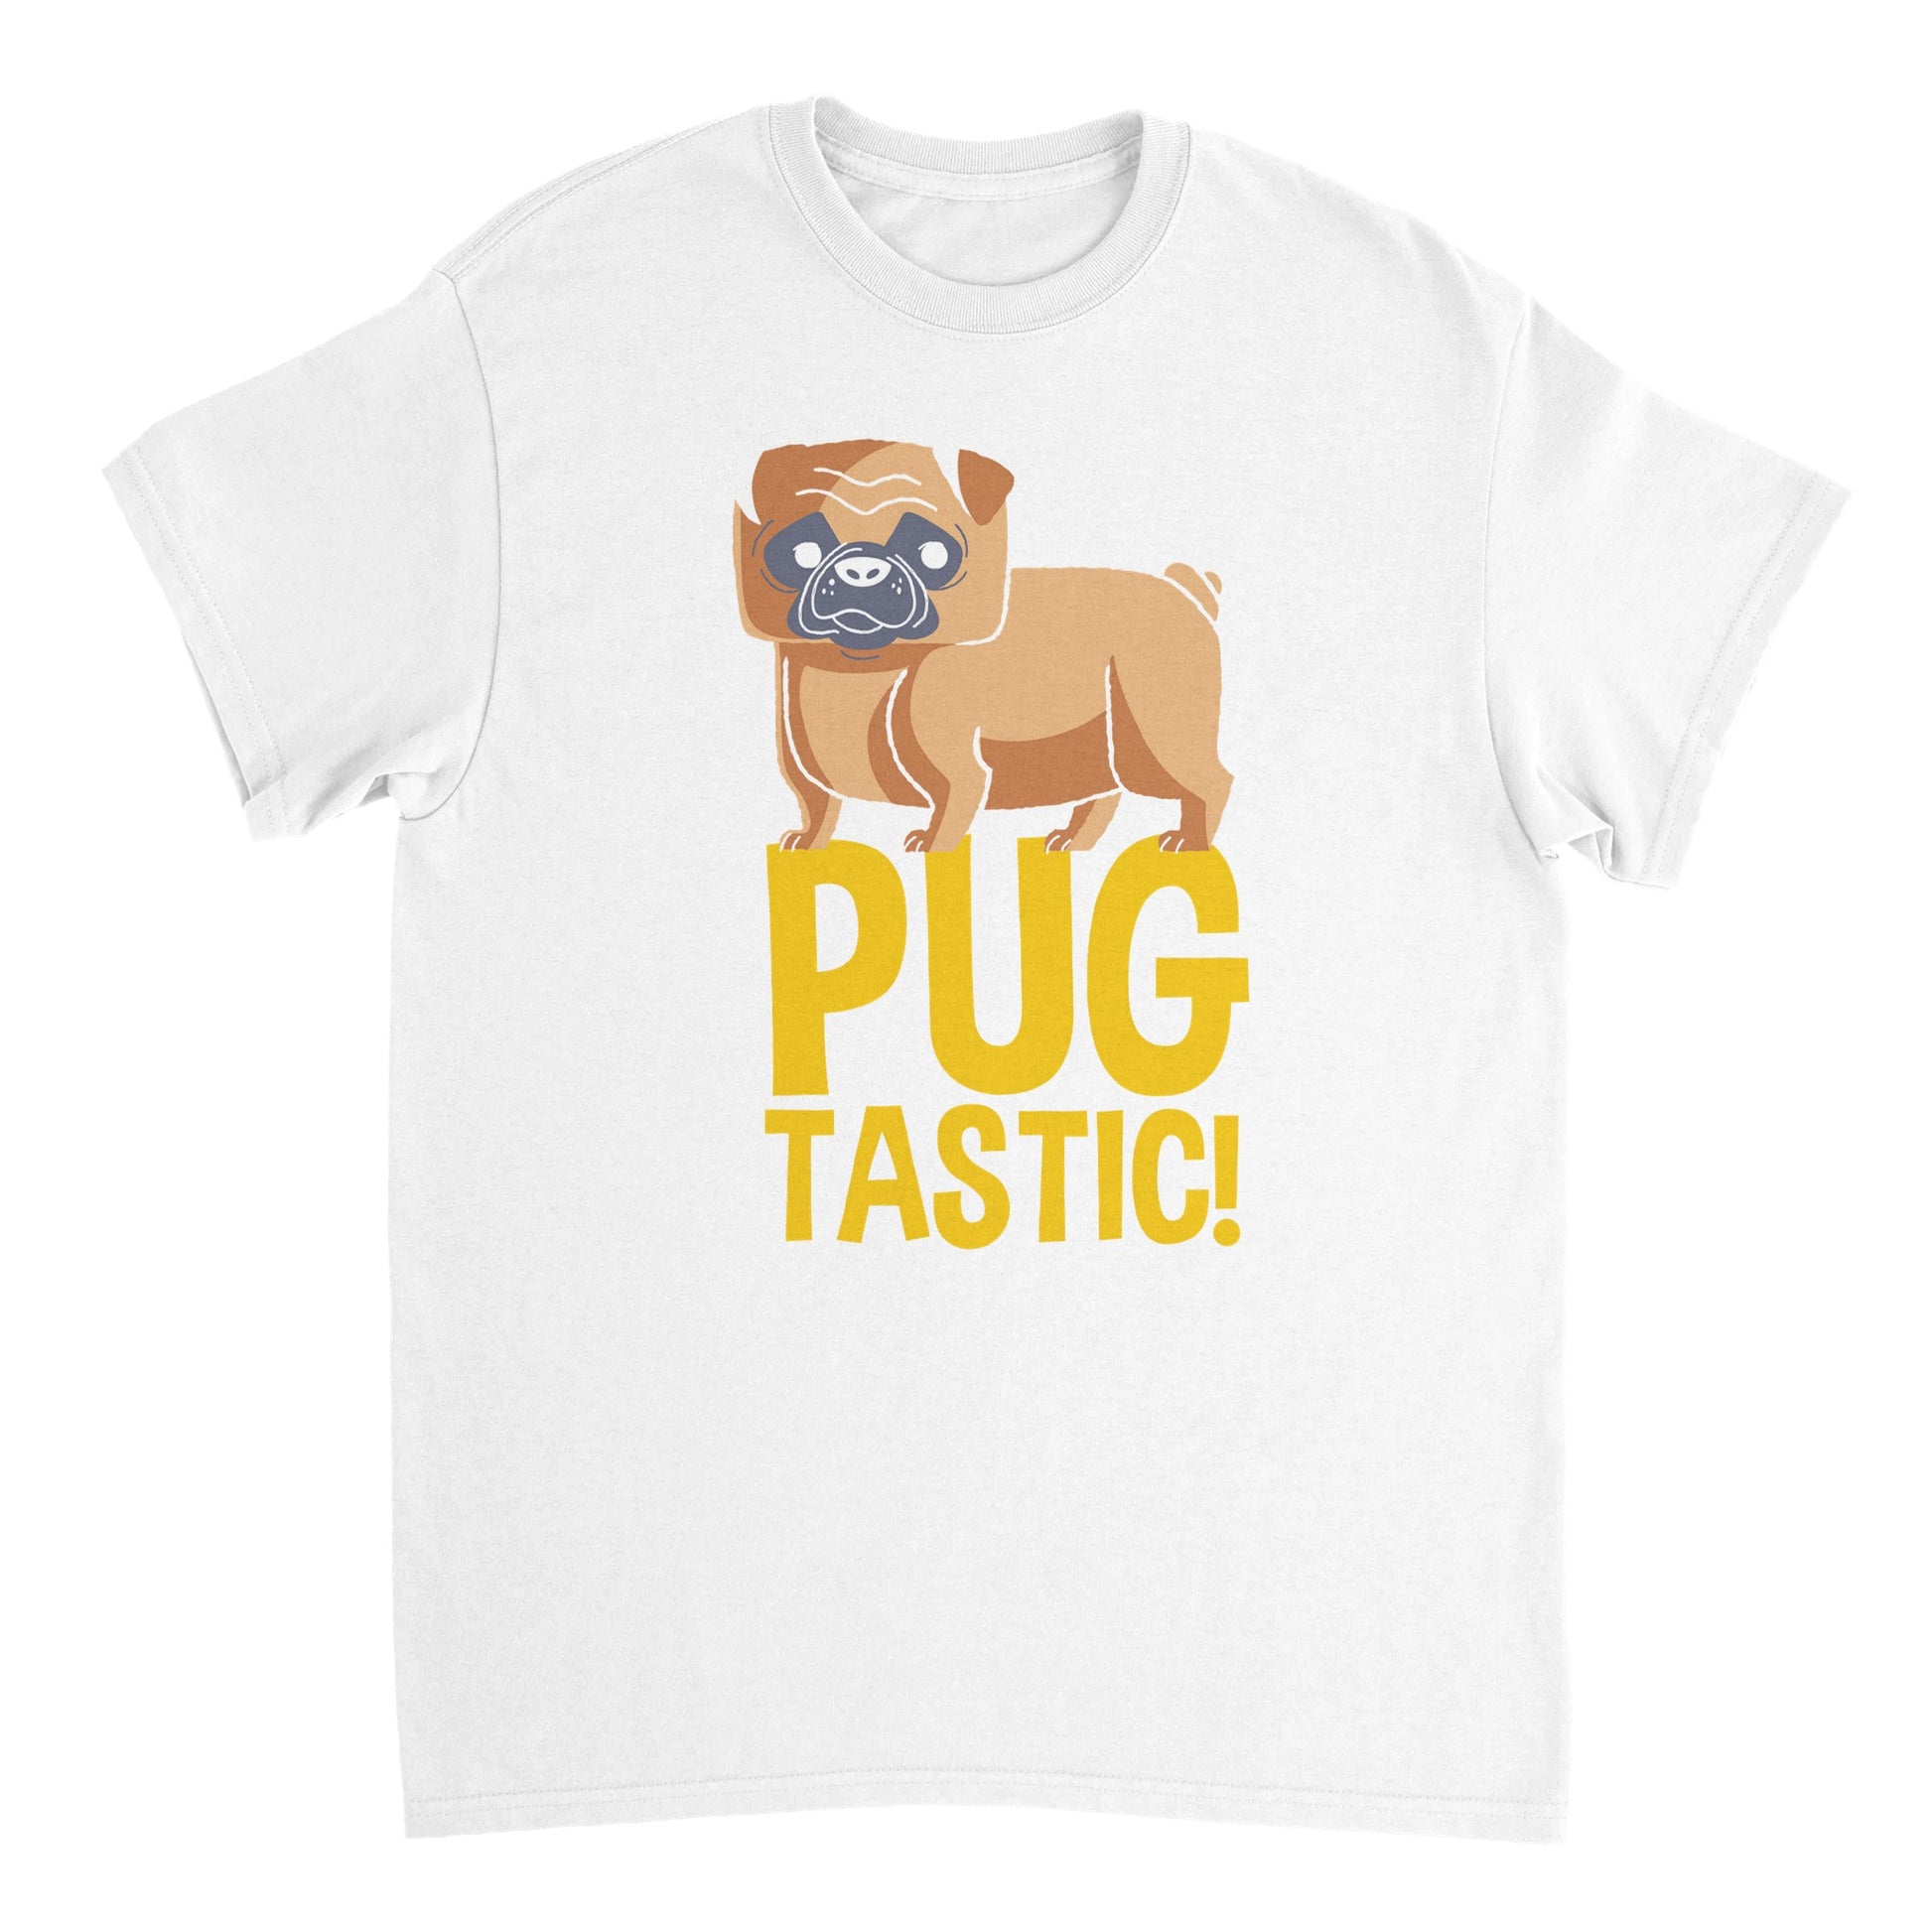 Pugtastic! T-shirt - Mister Snarky's